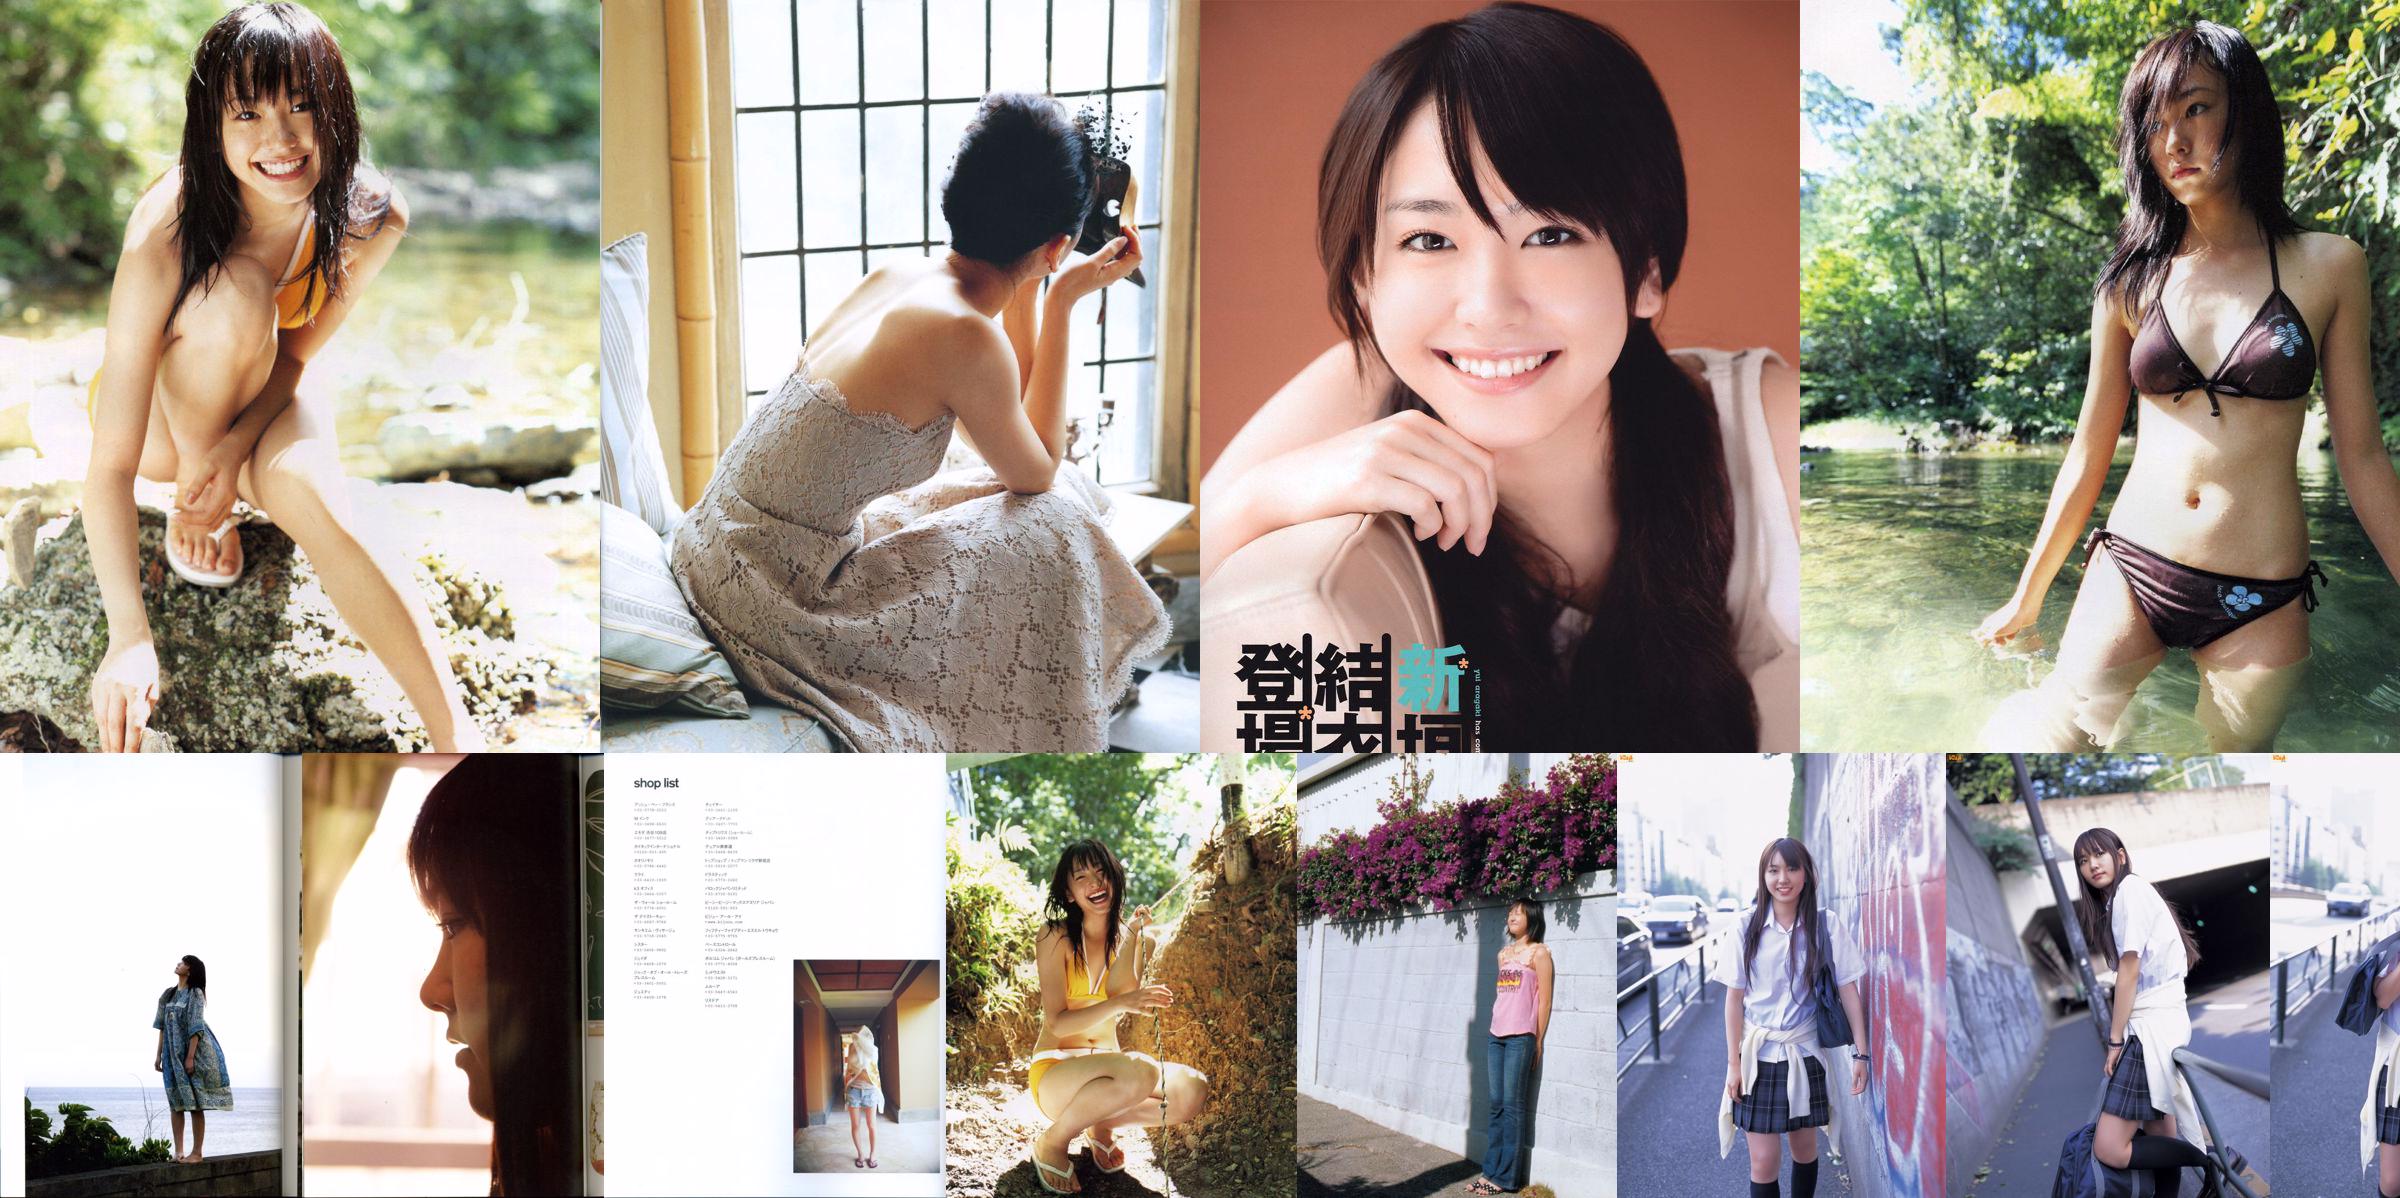 Yui Aragaki "Love Department House" Madori yêu quý của tôi No.58c7fb Trang 63